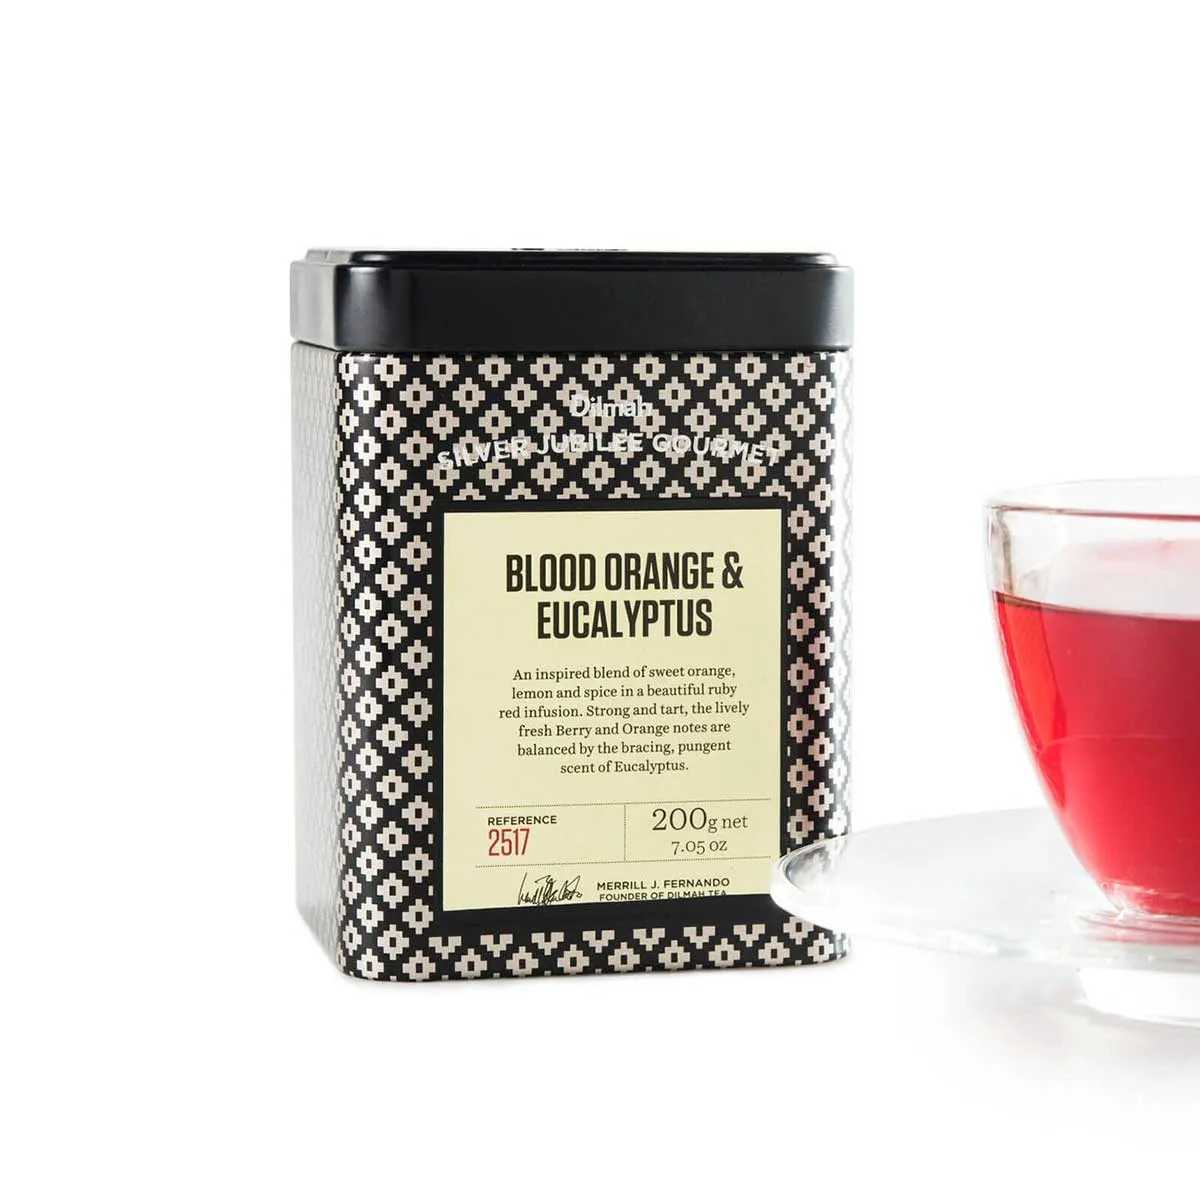 Tin of loose leaf Blood Orange & Eucalyptus tea, with a cup of tea